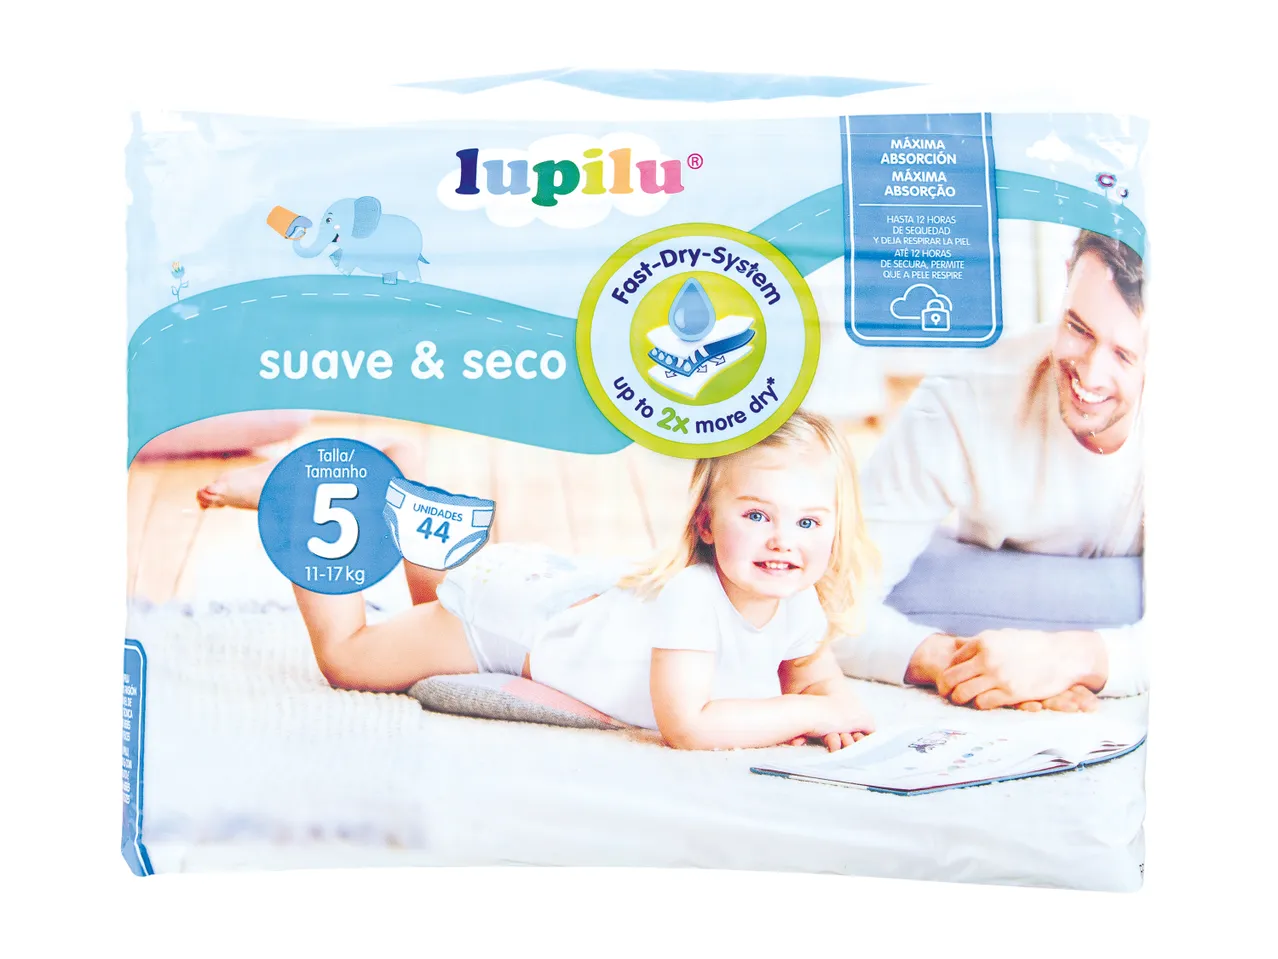 Lupilu® Fraldas Junior T5/ Midi T3/ Maxi T4